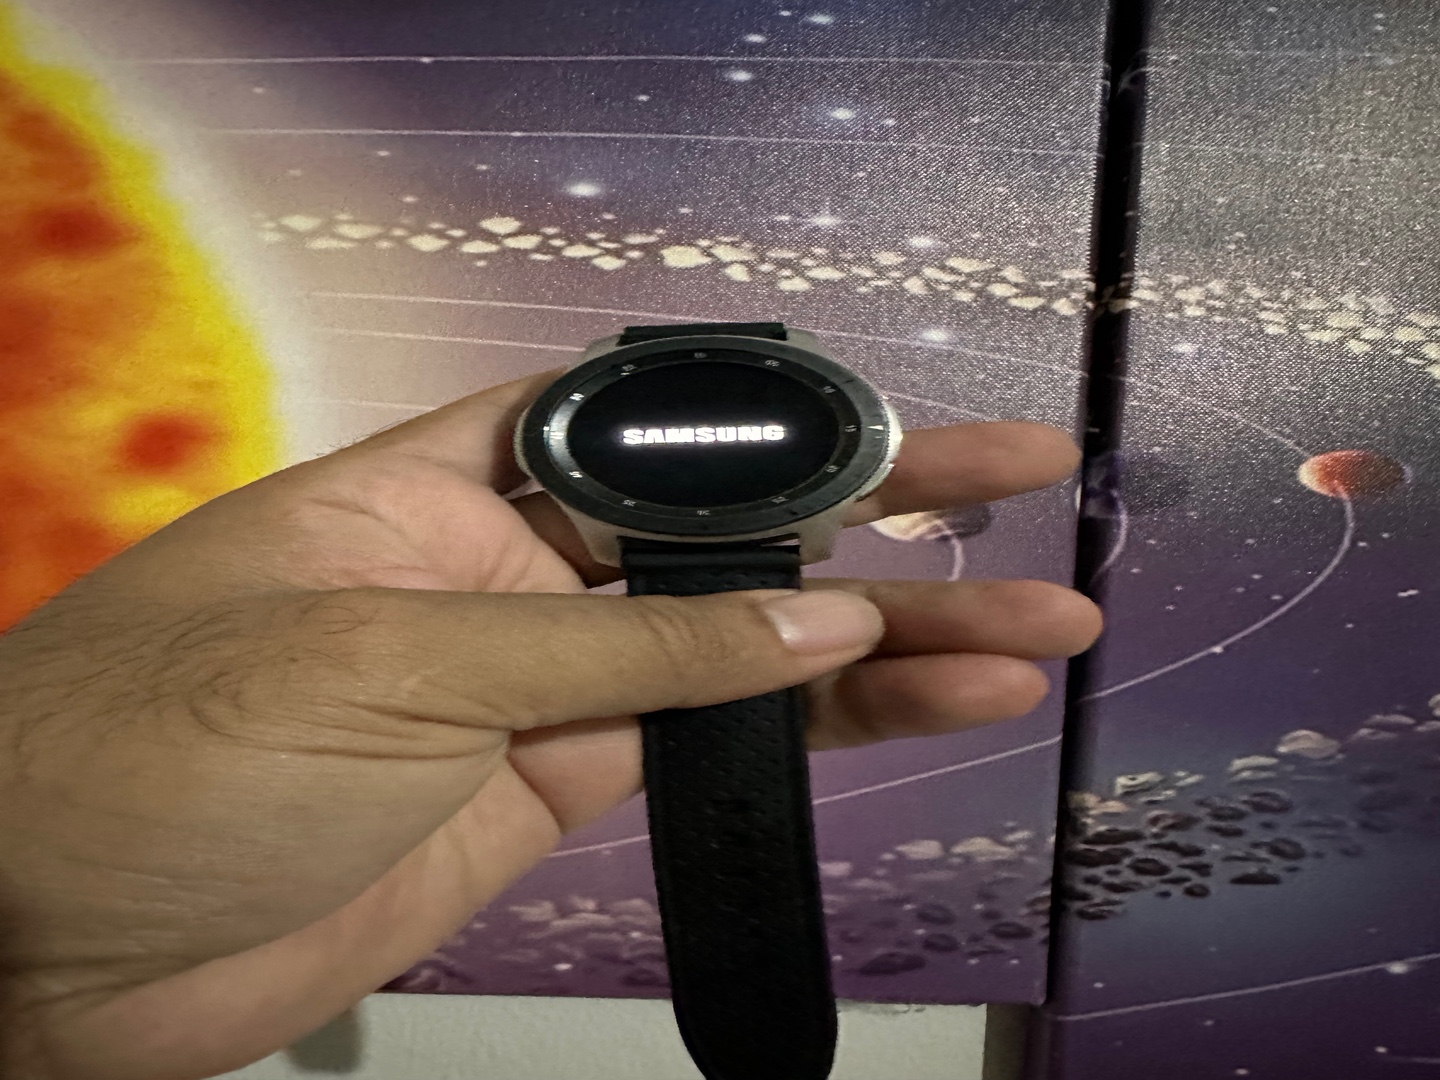 accesorios para electronica - Reloj inteligente Samsung Galaxy Watch de 46mm 2